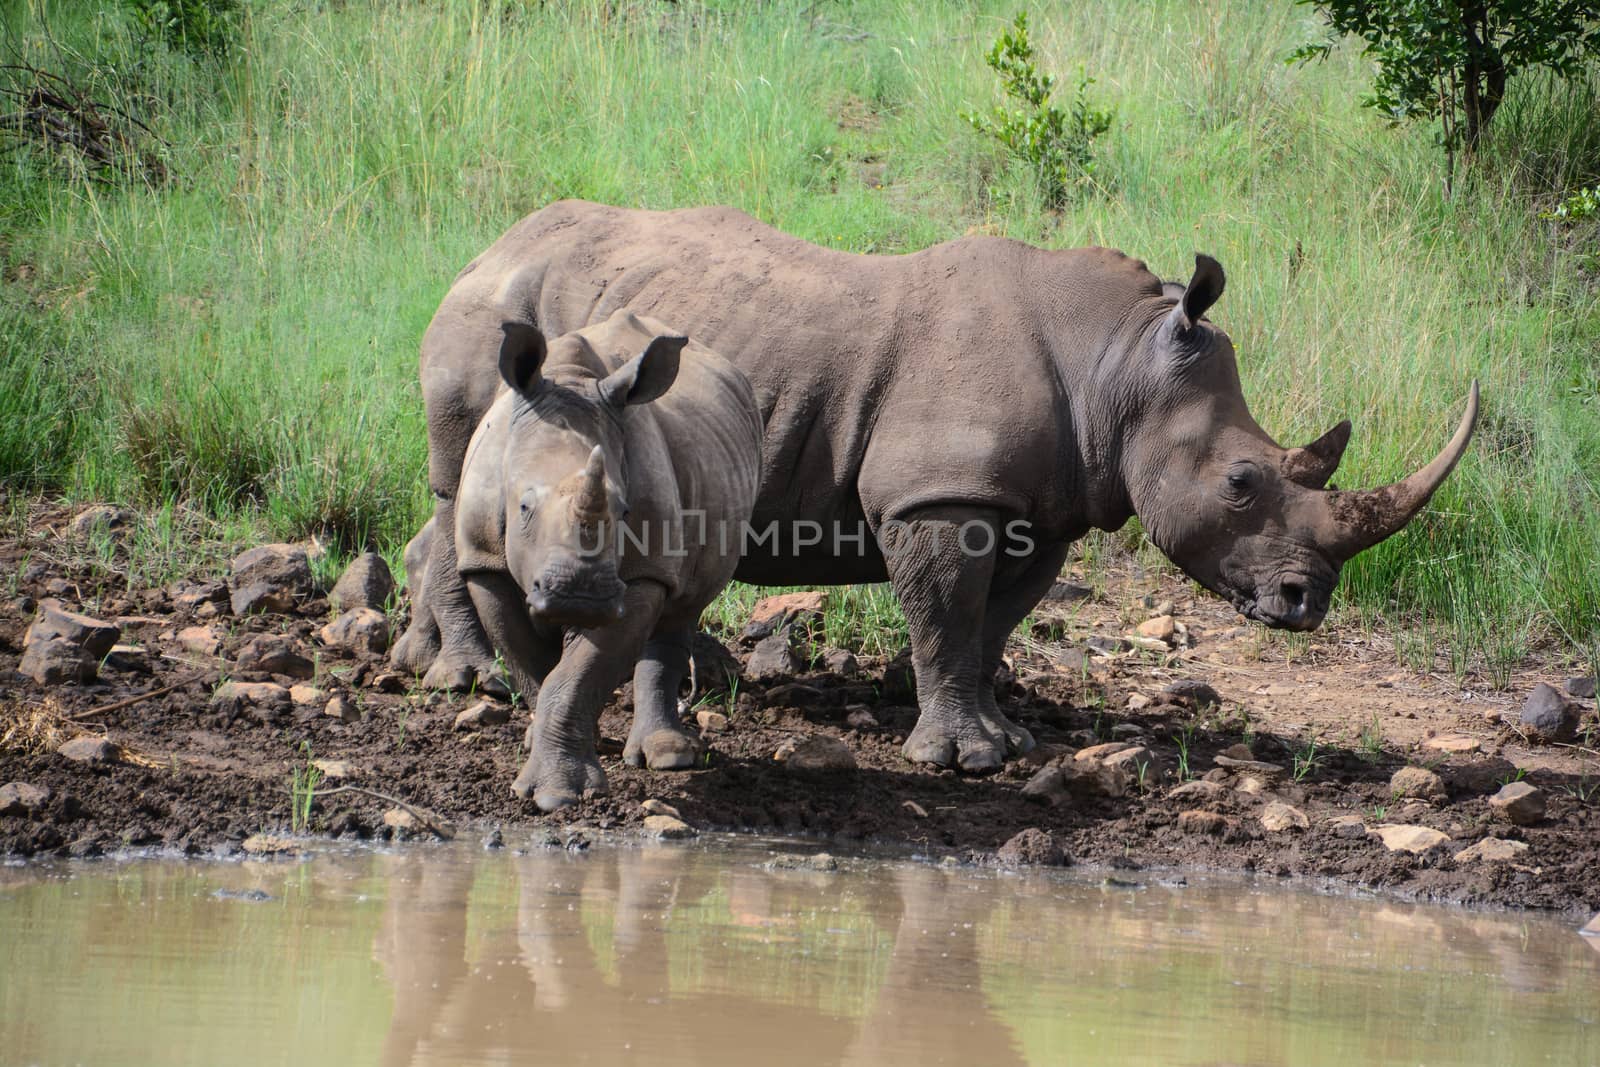 Rhinoceros drinking at waterhole by marcrossmann